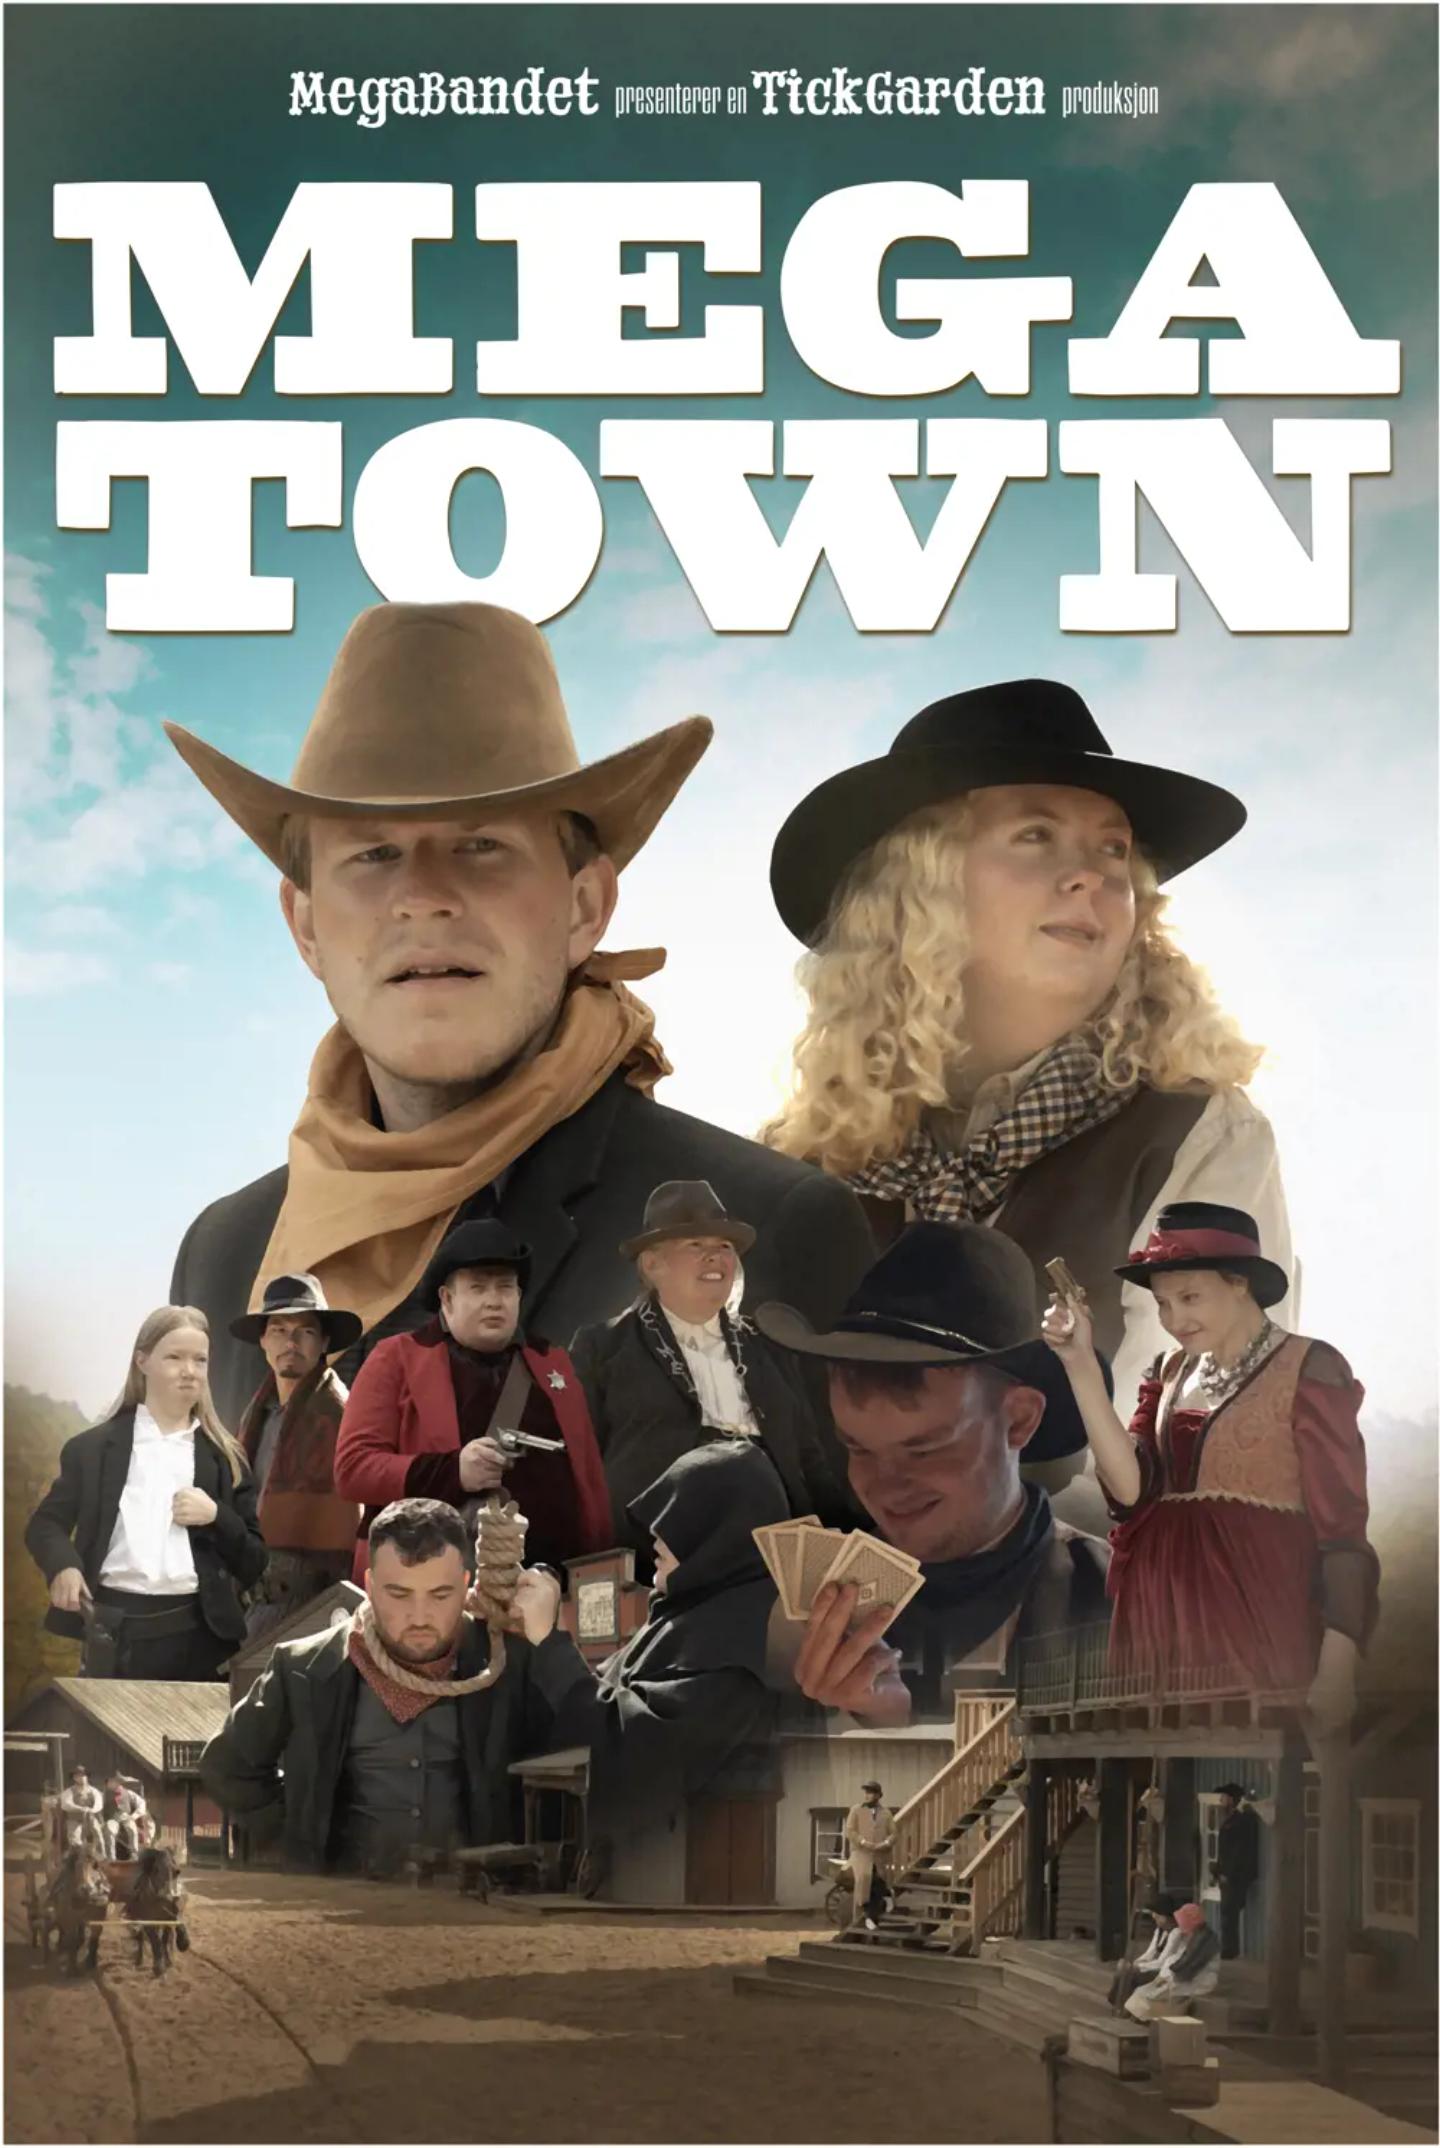 Plakat for 'Megatown'